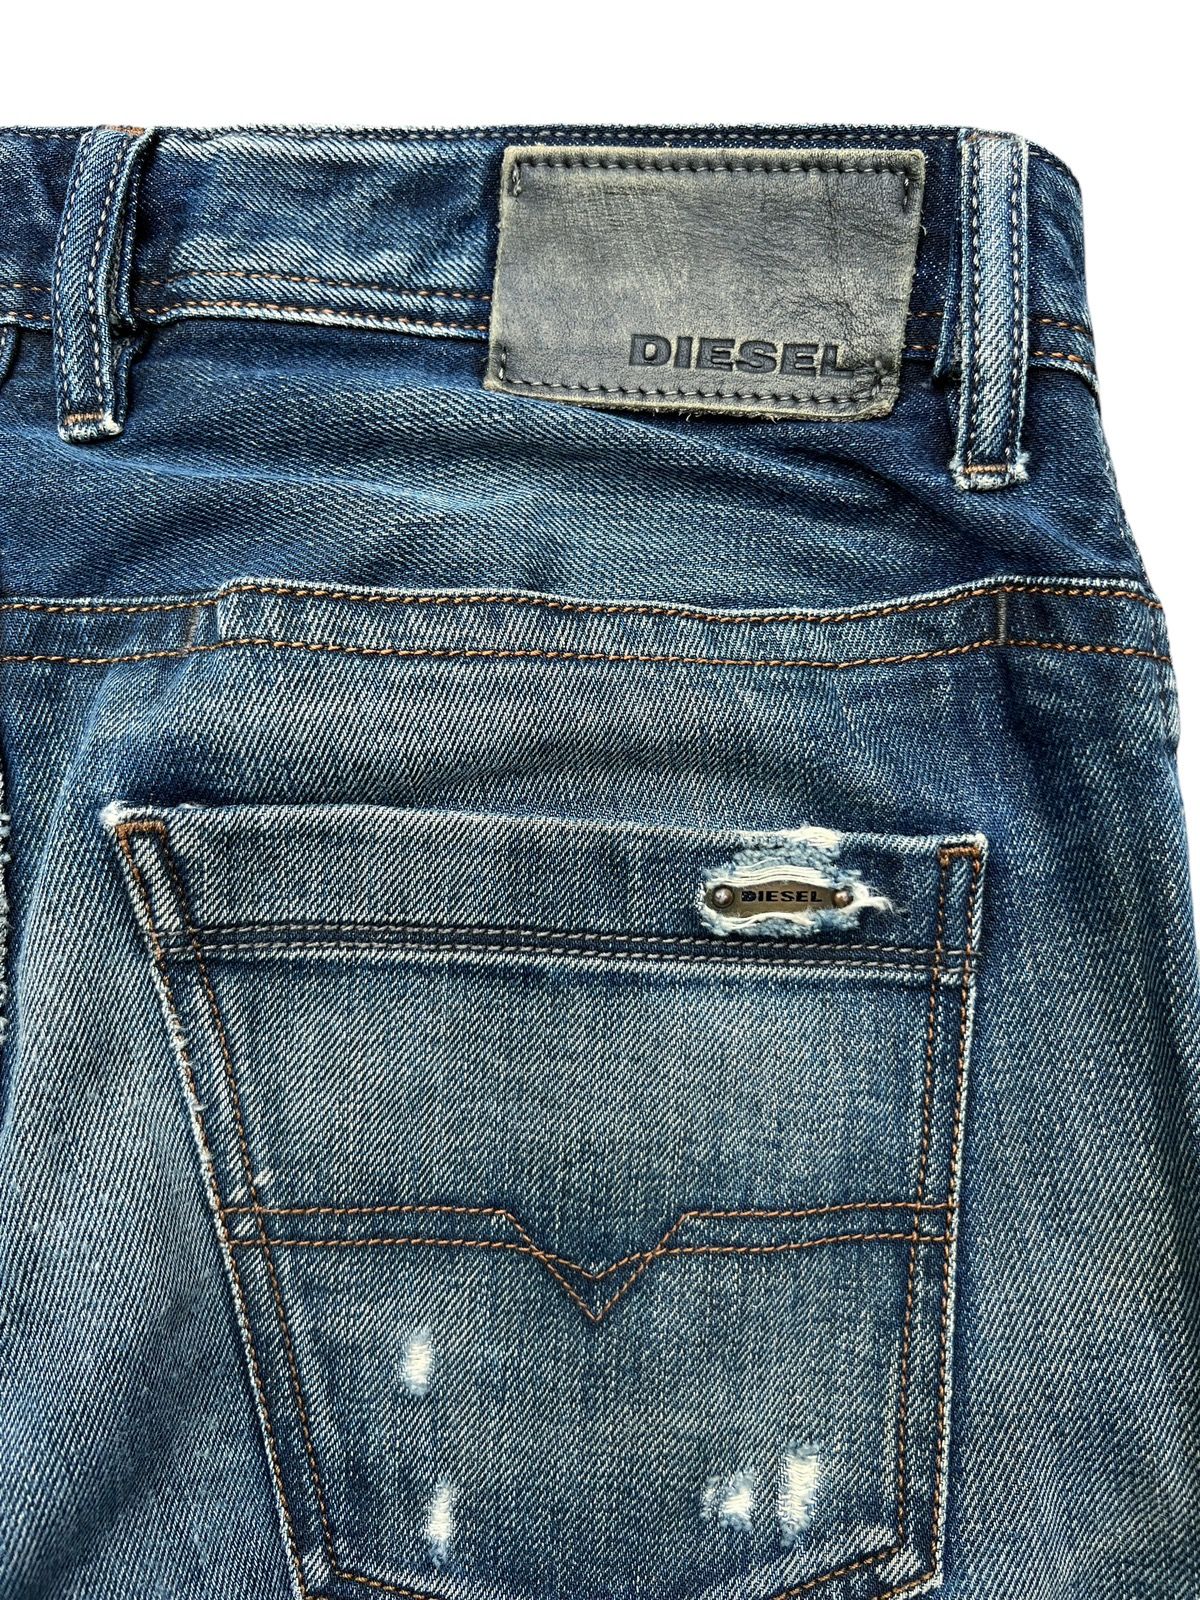 Vintage Diesel Industry Distressed Denim Jeans 32x31 - 9